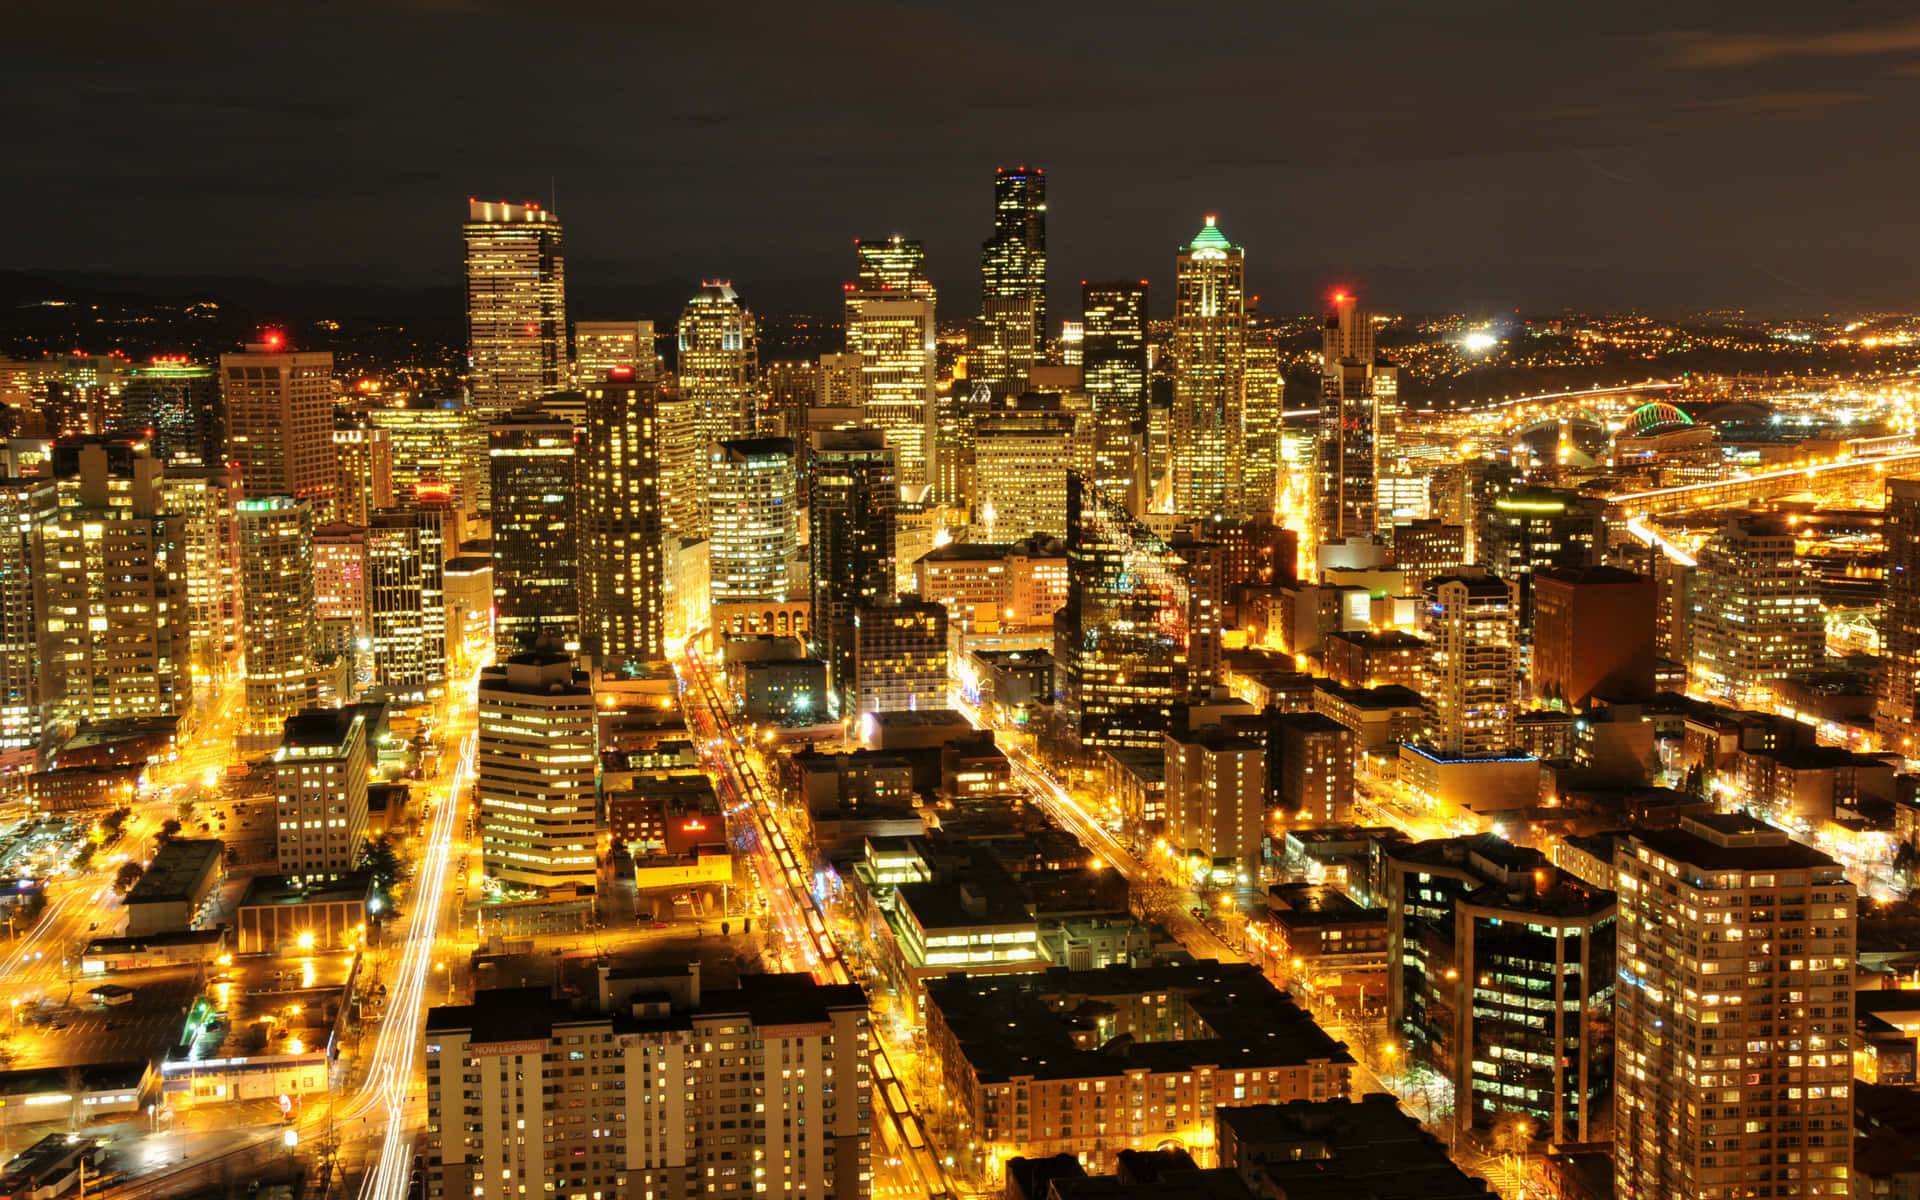 Strahlendesgoldenes Licht - Beste Hintergrundbild Von Seattle.